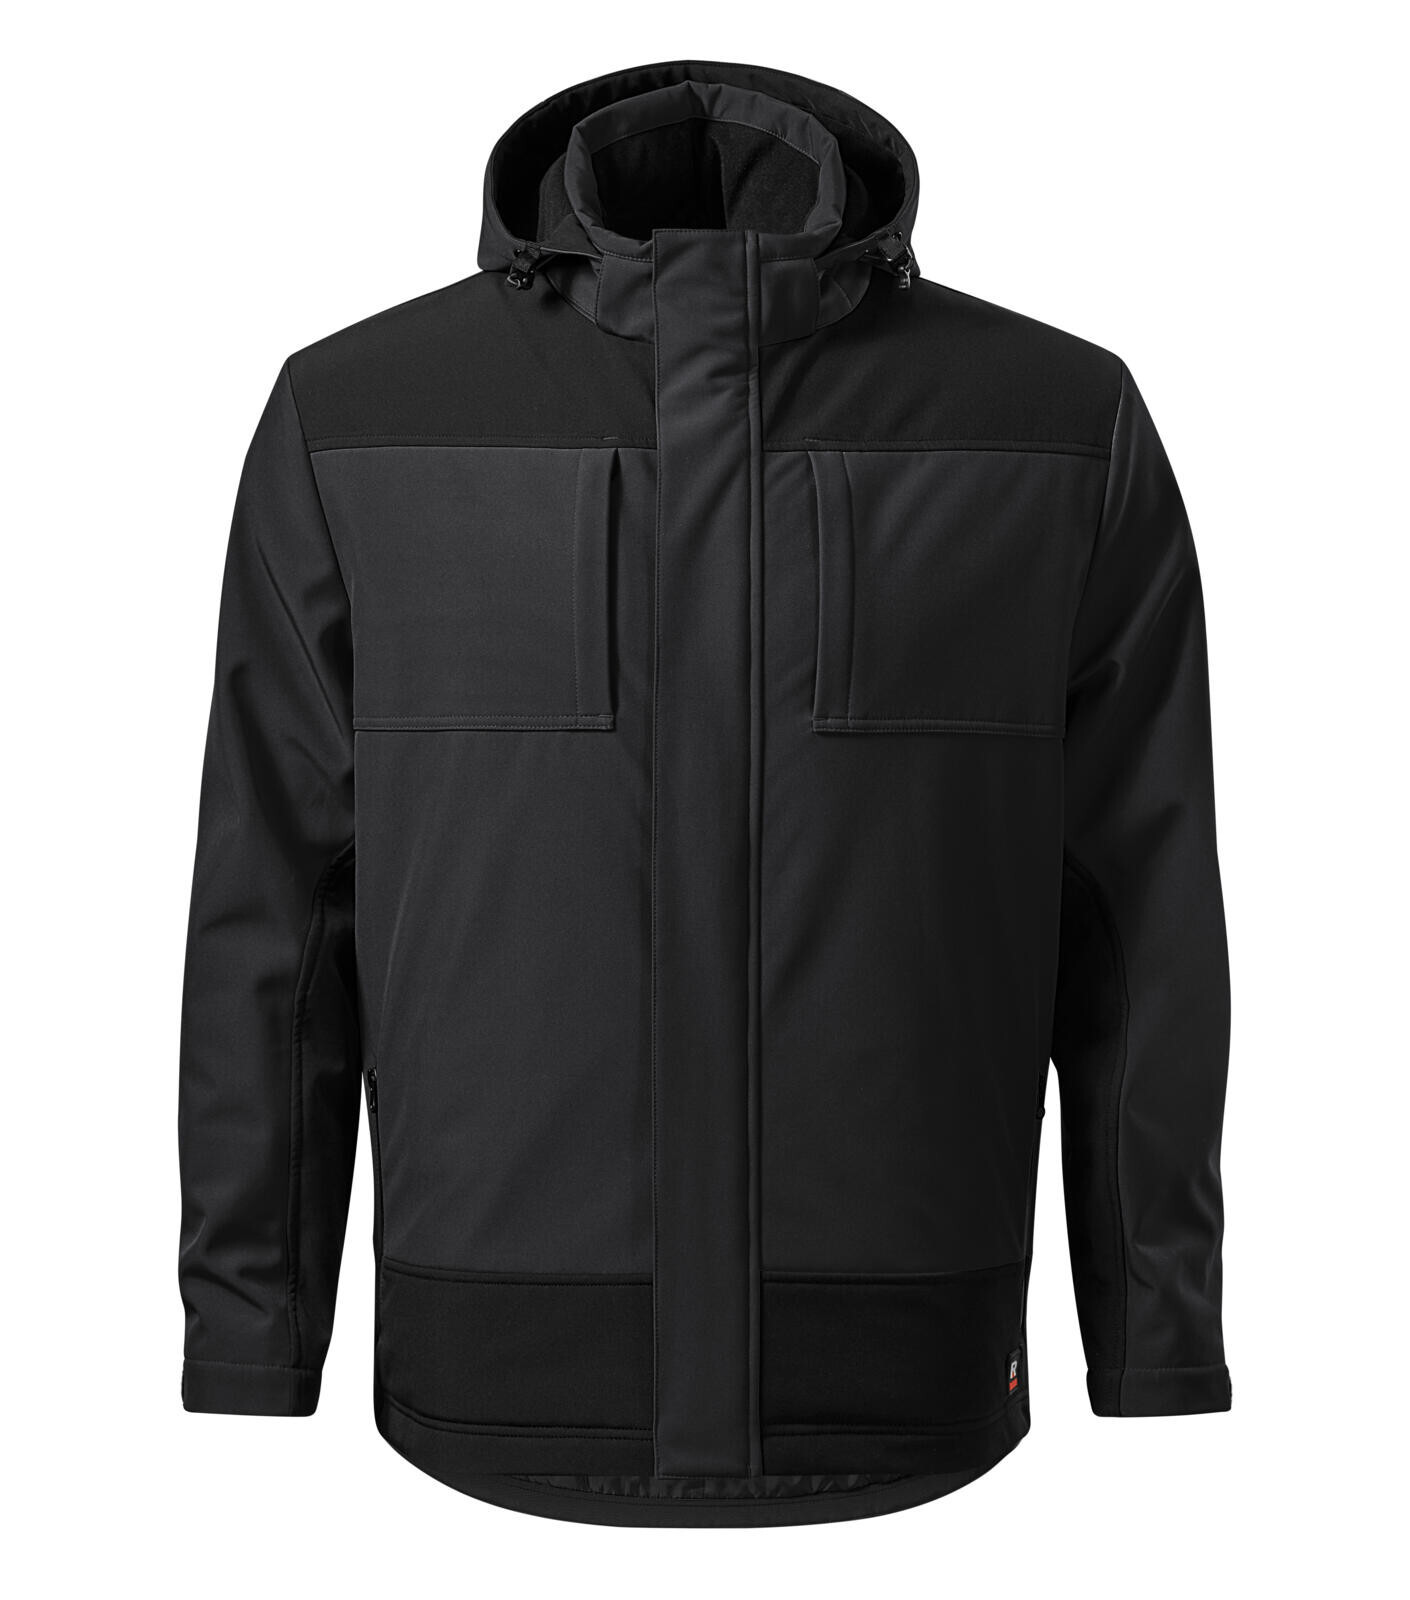 Pánska zimná softshellová bunda Rimeck Vertex W55 - veľkosť: L, farba: ebony grey